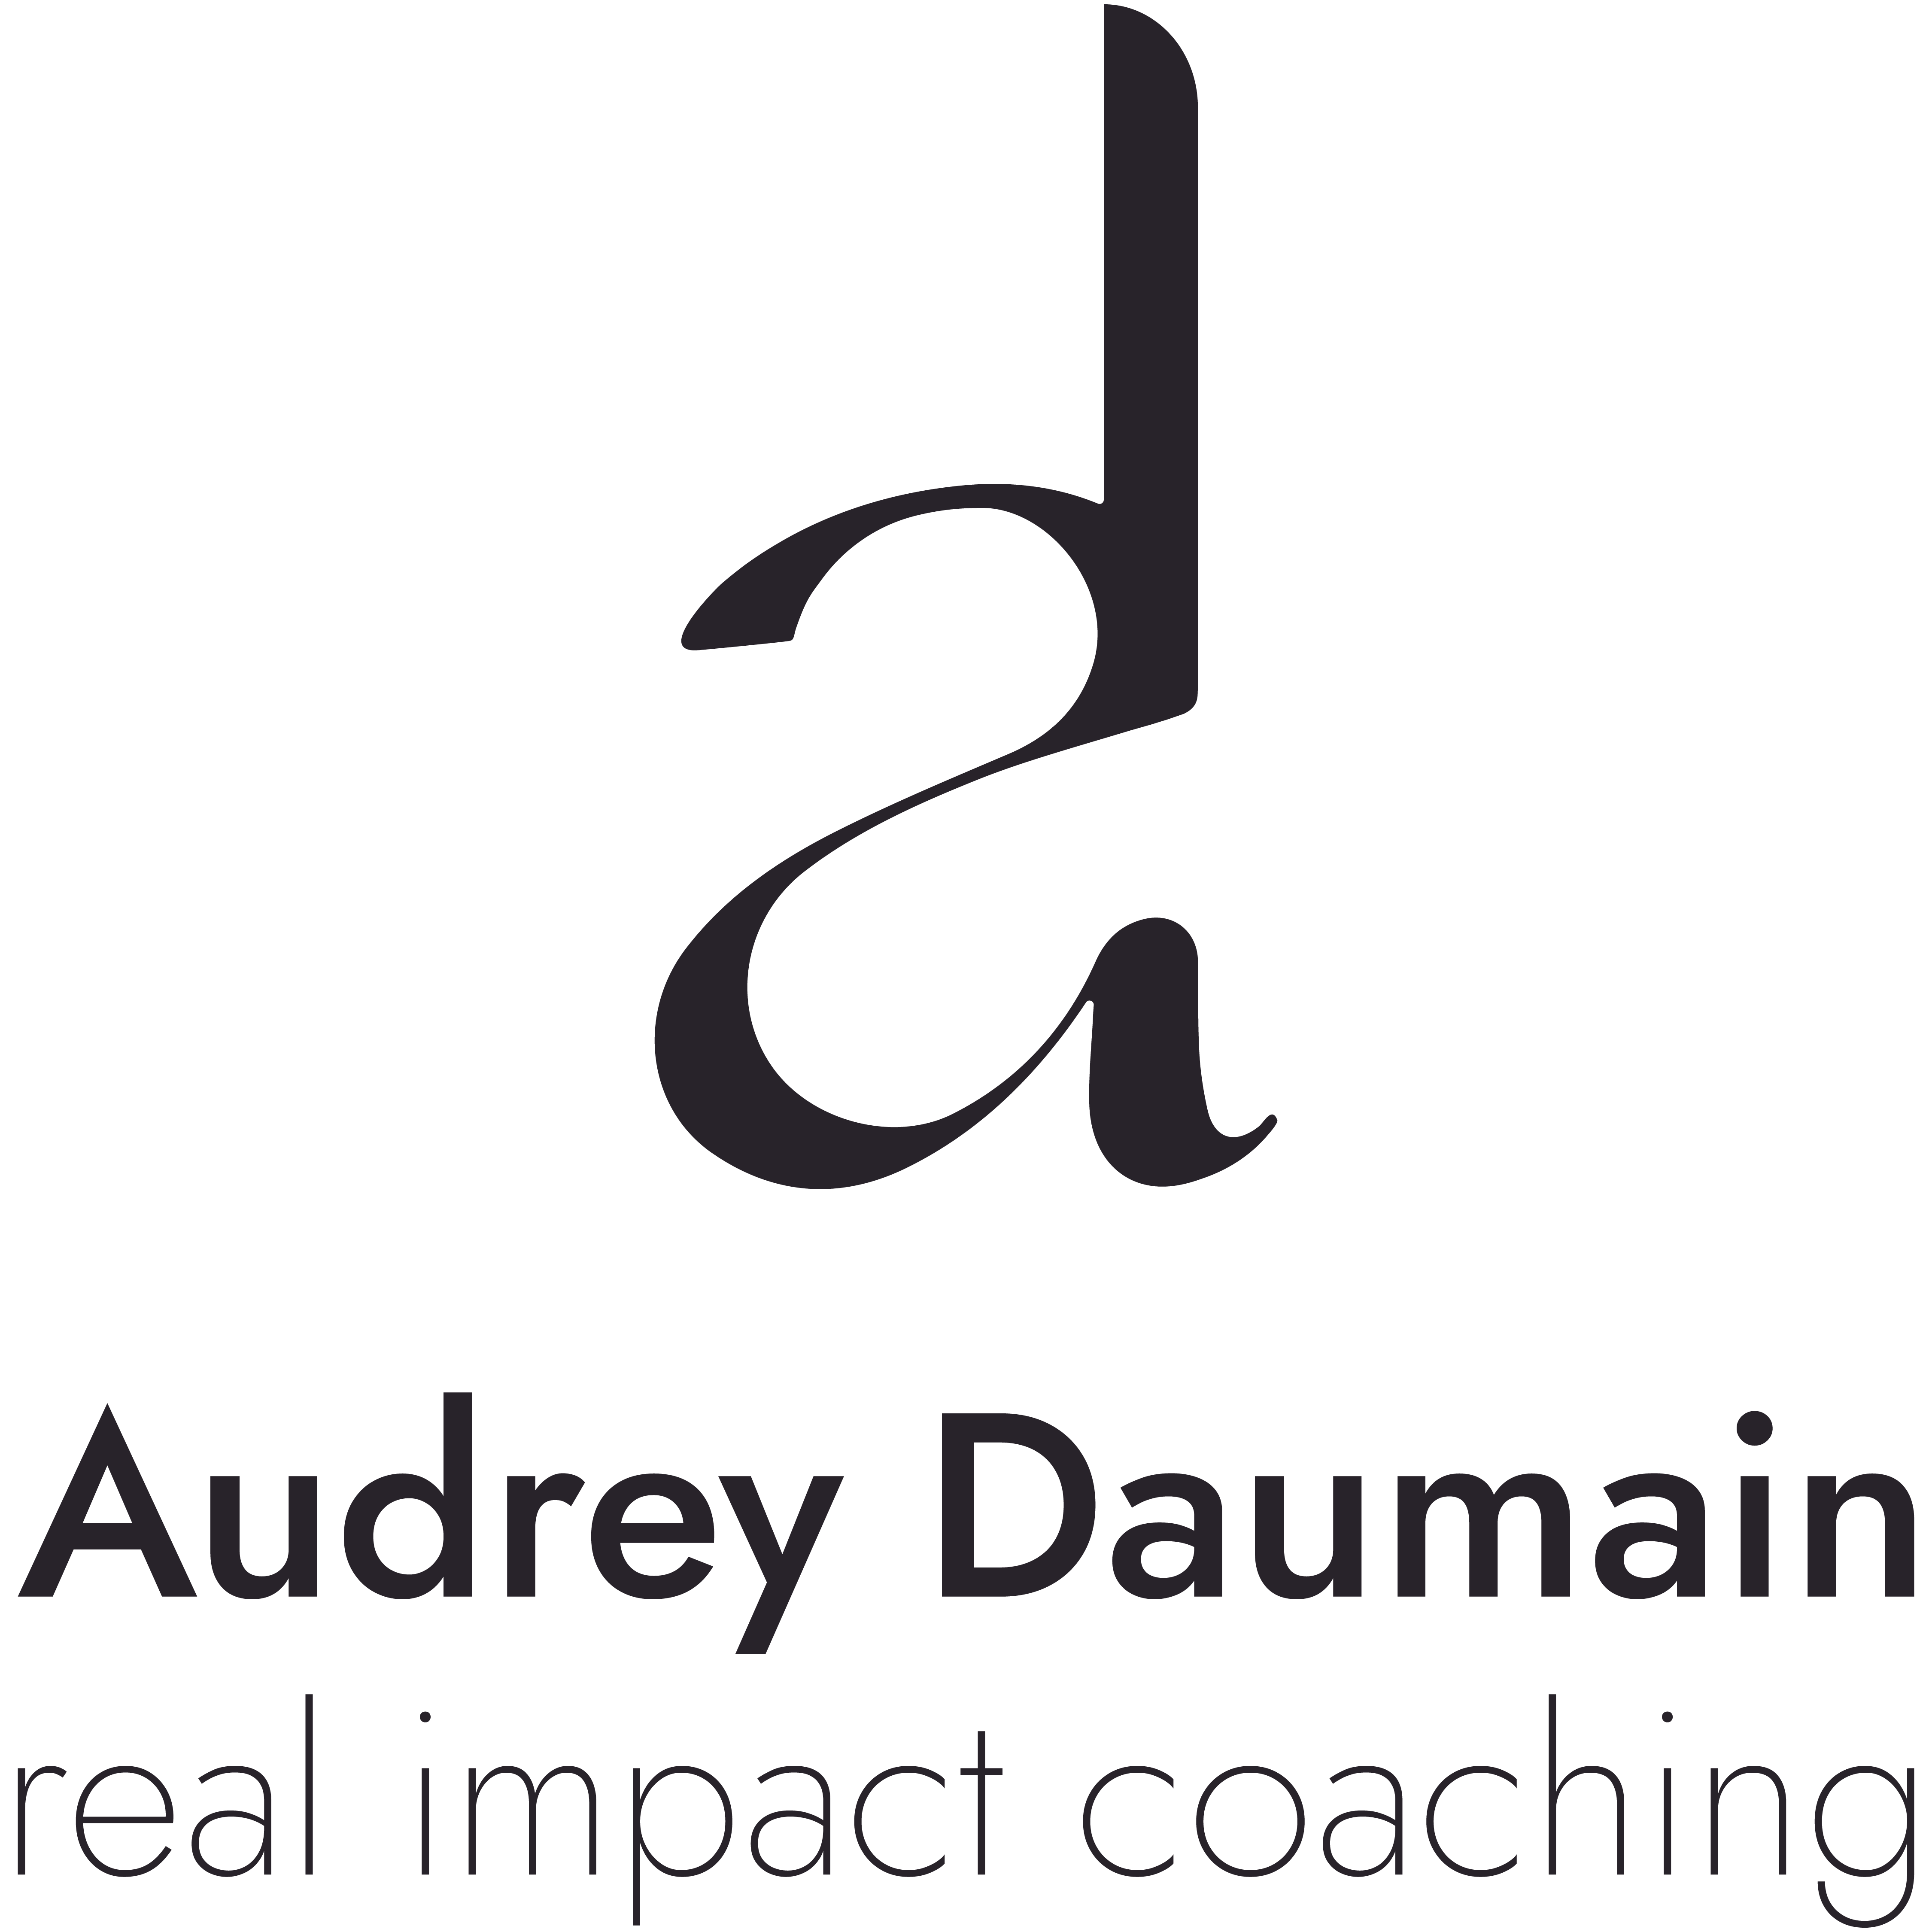 Audrey Daumain